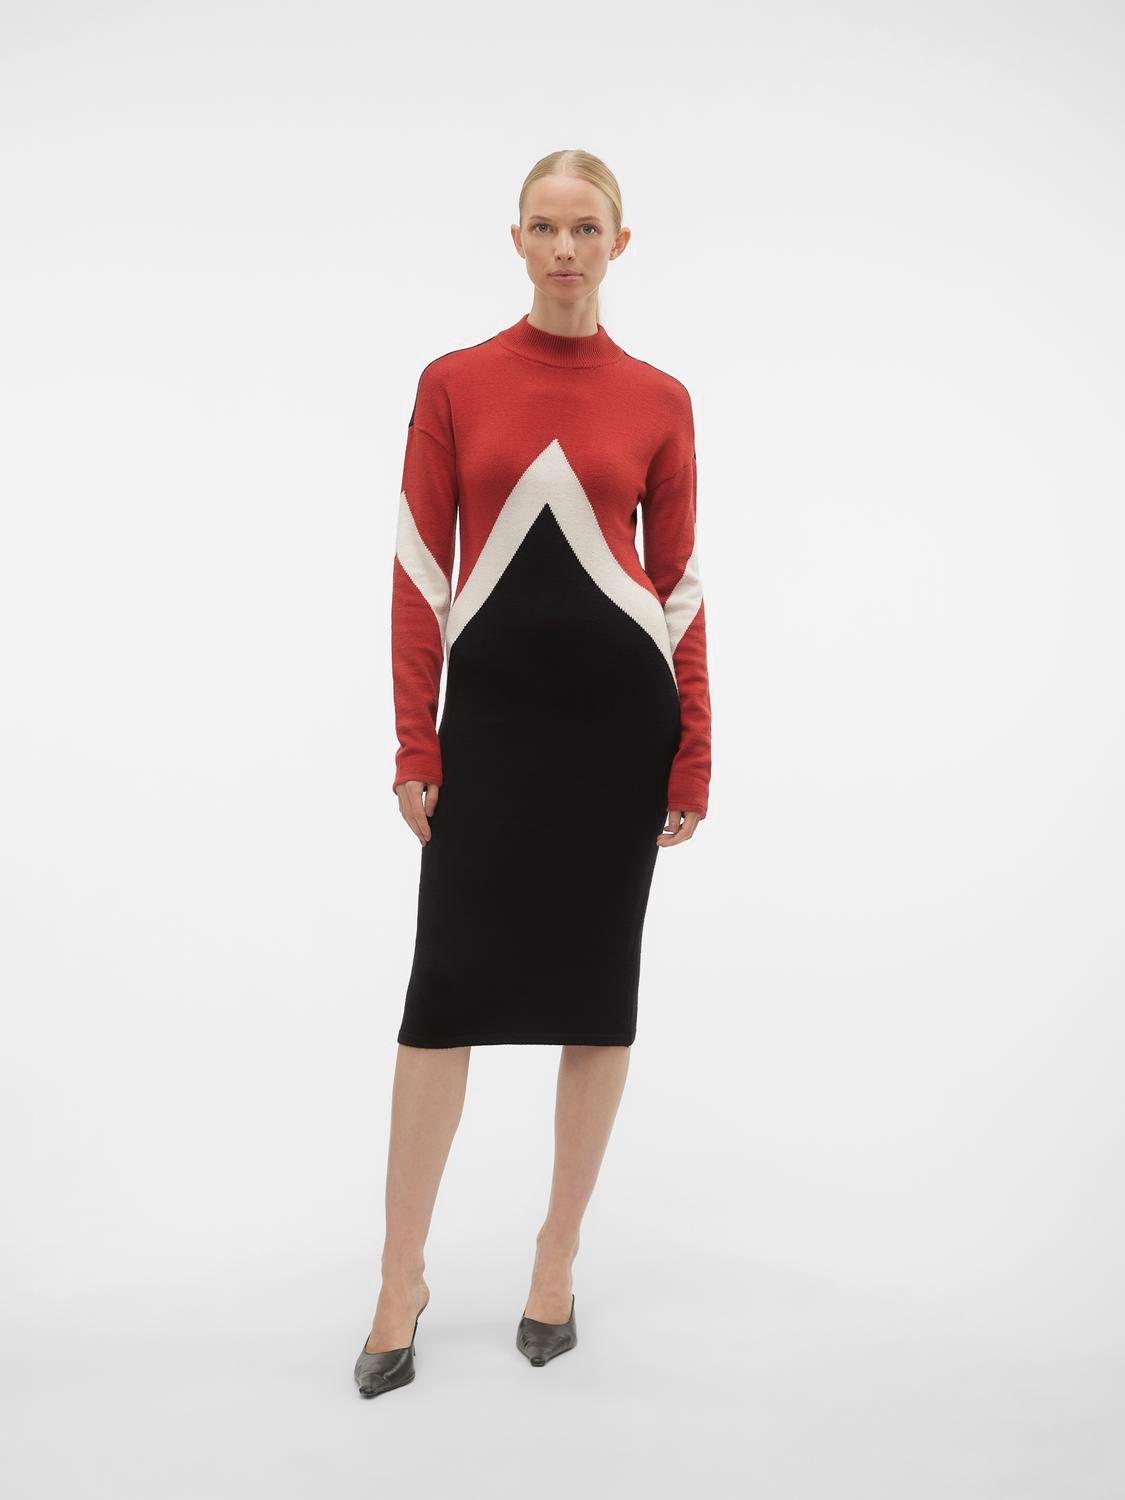 Vero Moda VMNANCY Long dress -Red Ochre - 10303186